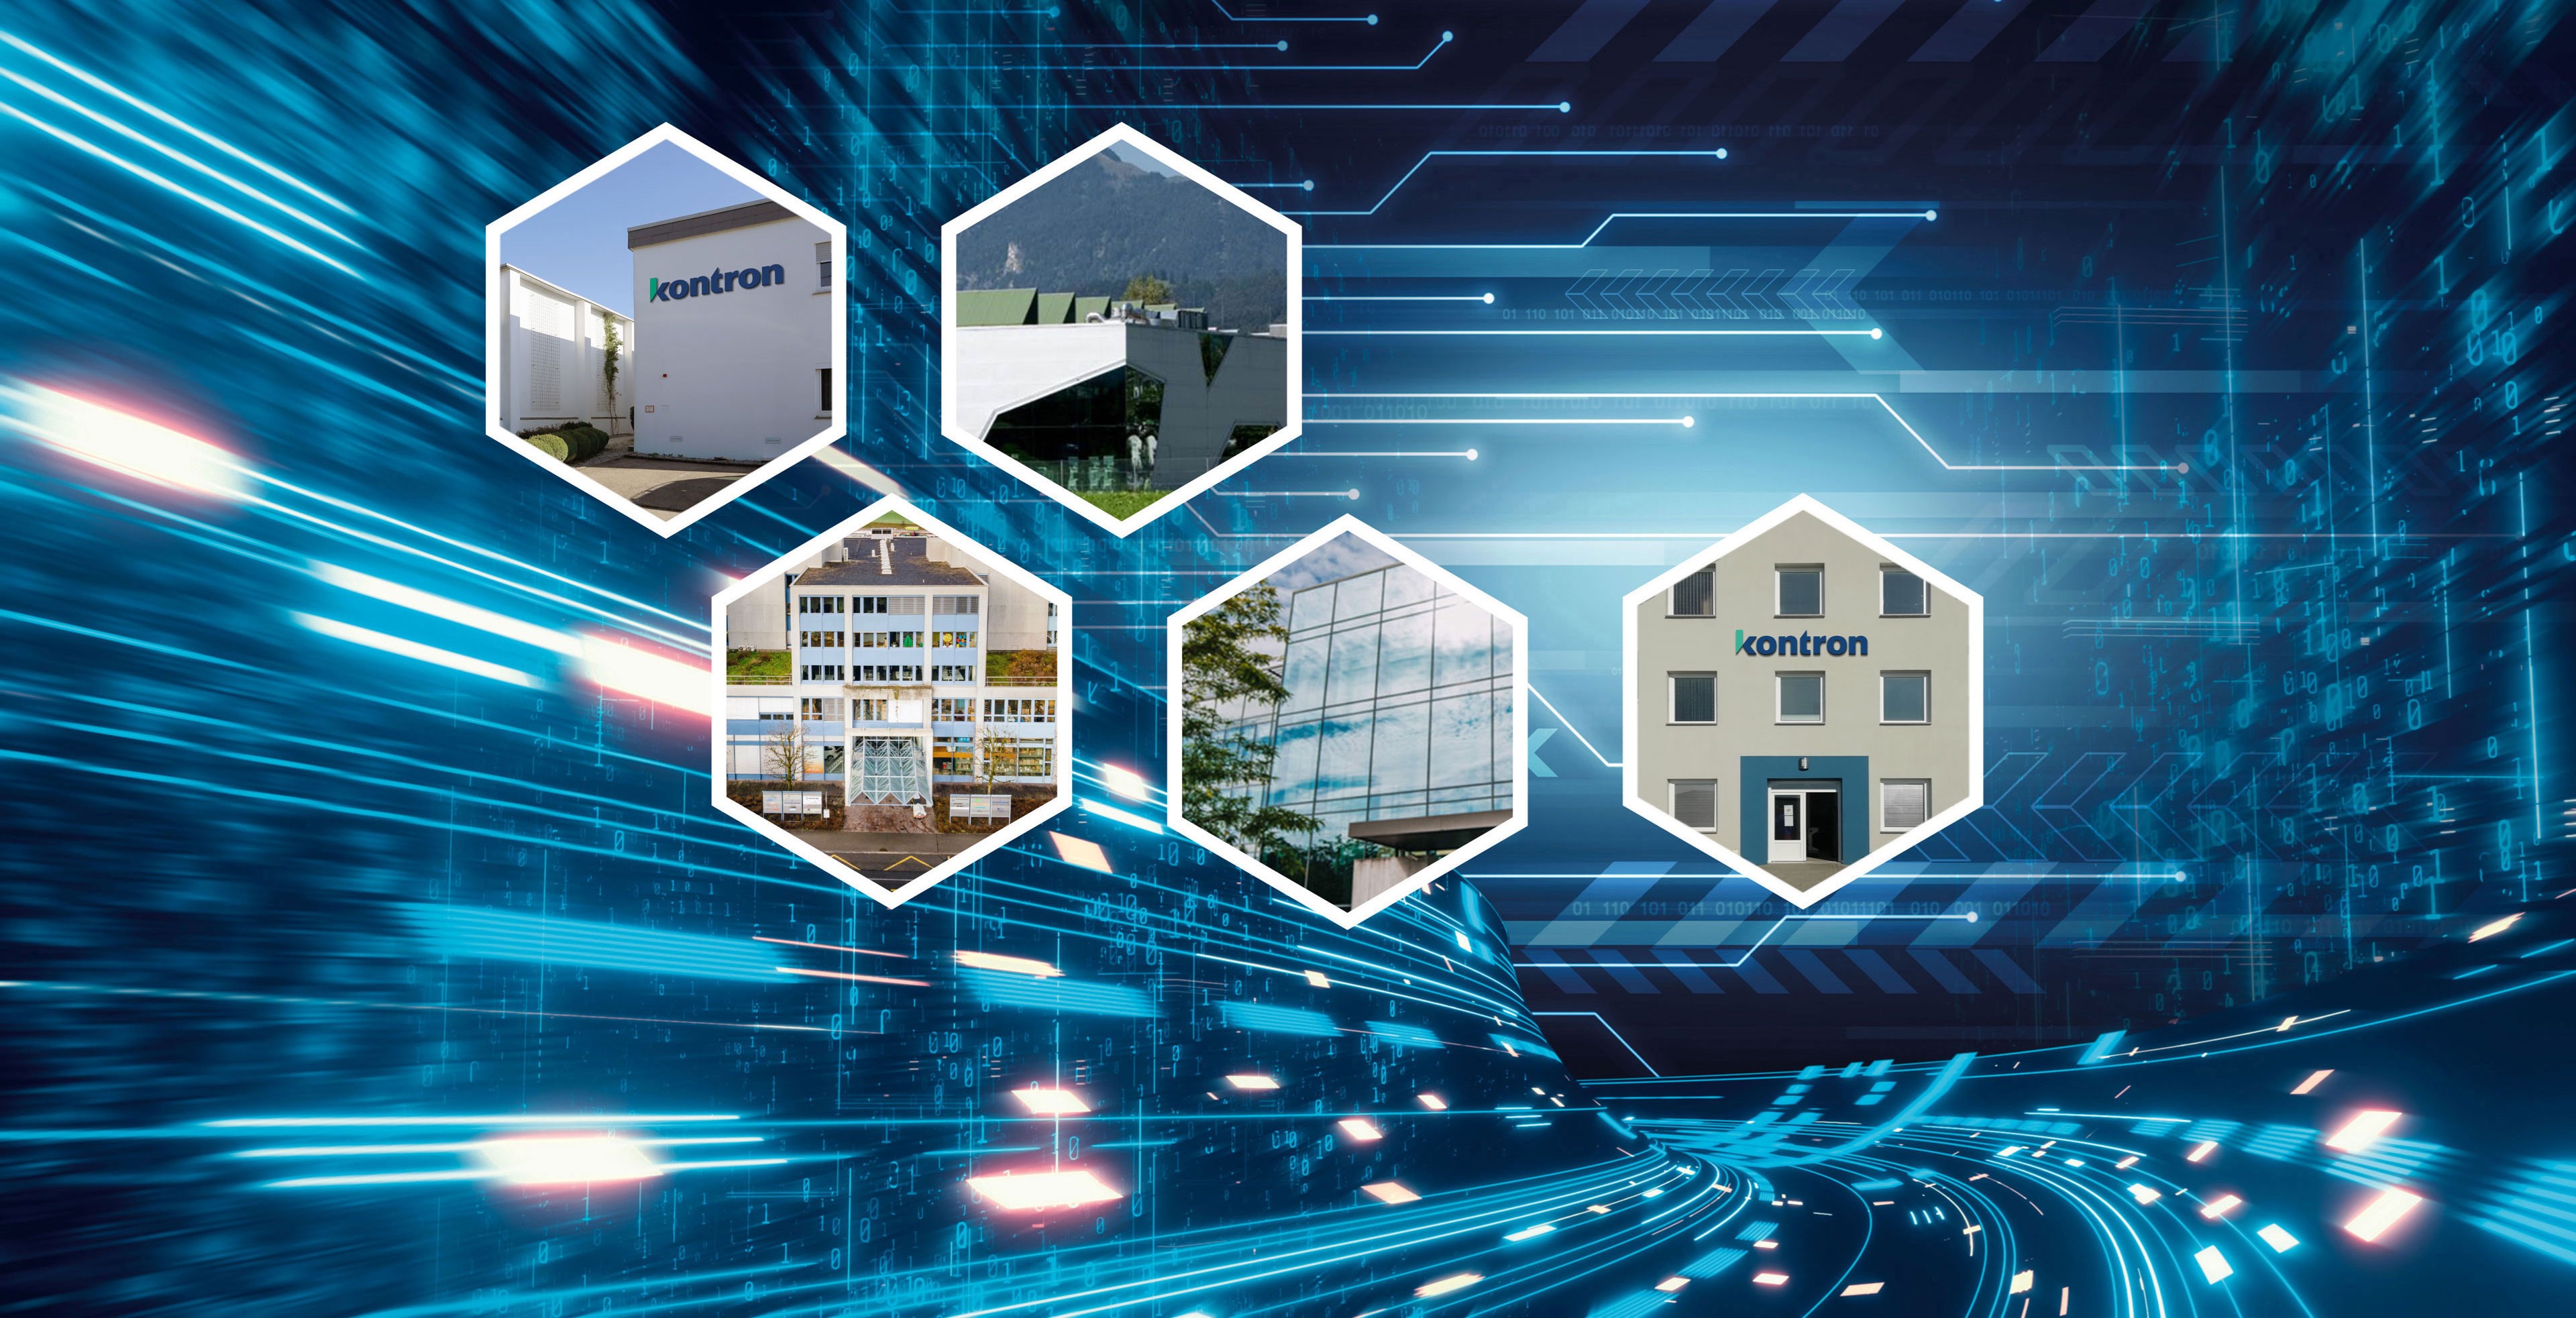 Cégépületek Kontron Electronics Németország, Svájc, Magyarország, Kontron Ausztria és Iskratel EMS